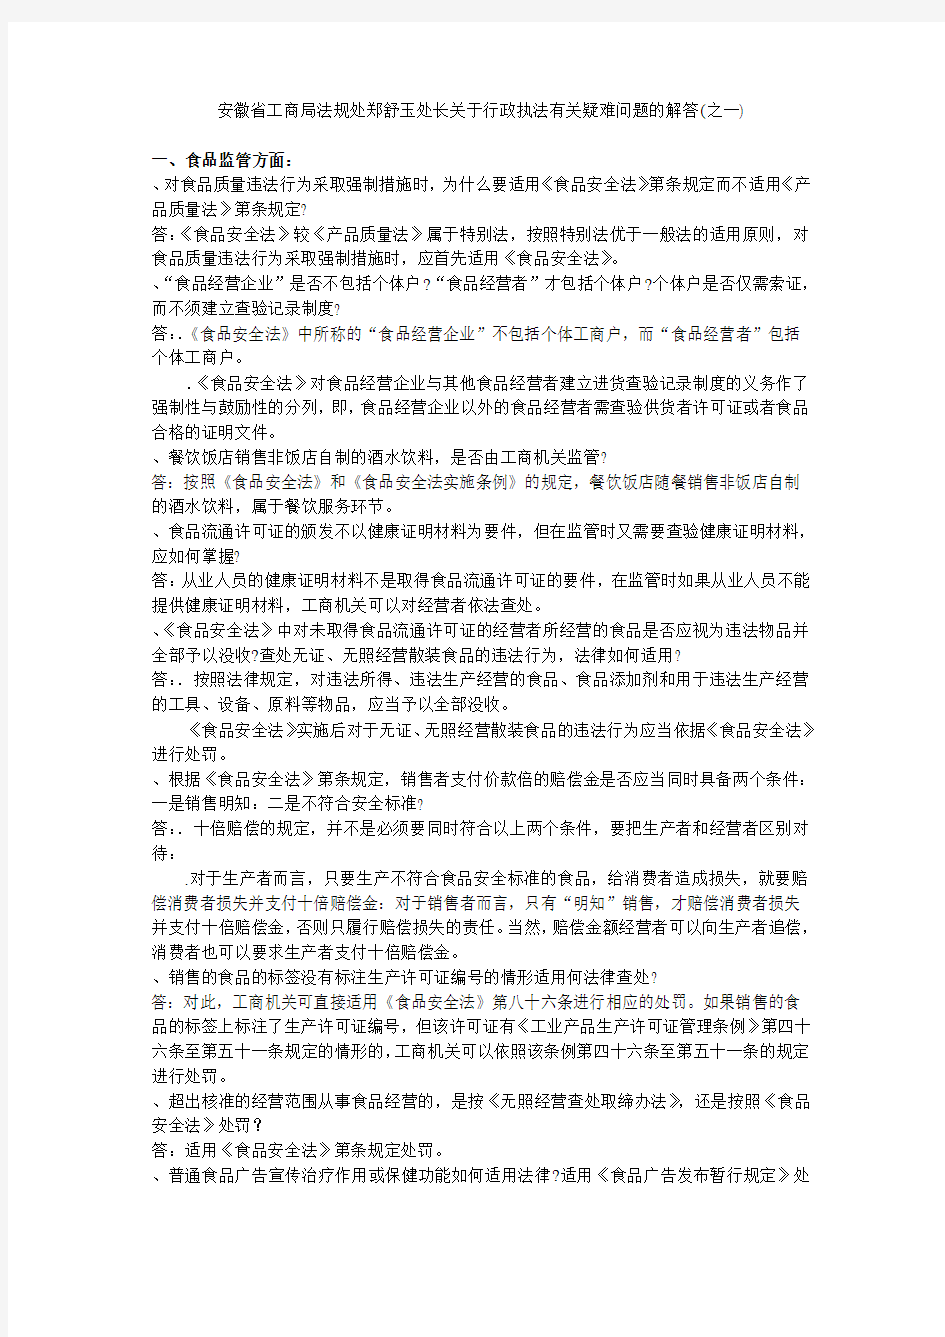 安徽省工商局法规处郑舒玉处长关于行政执法有关疑难问题的解答